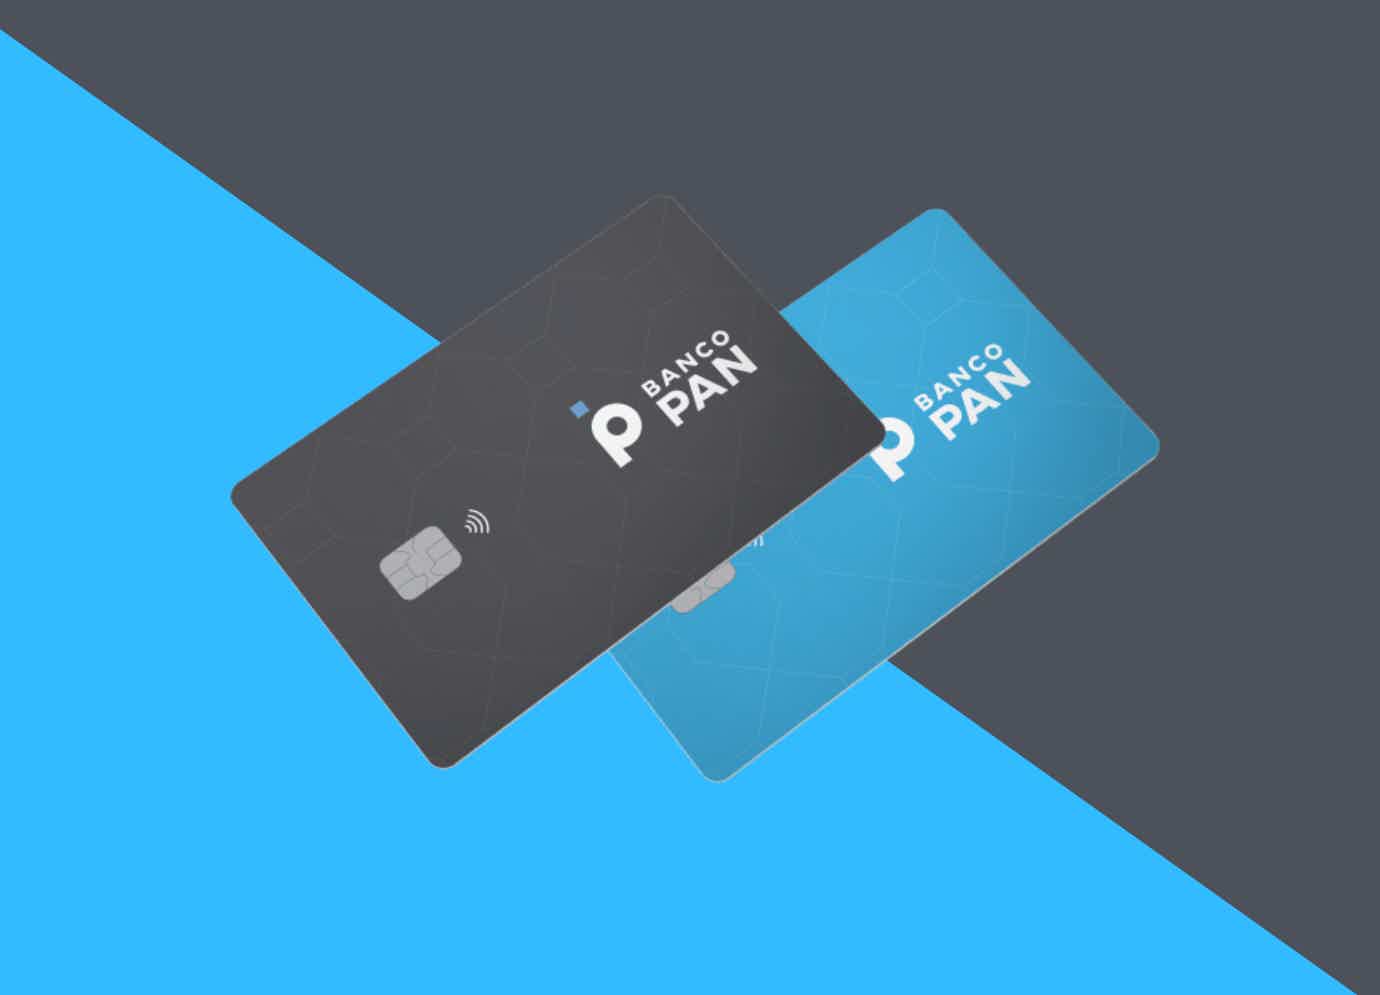 Fundo em preto e azul com dois cartões de crédito em destaque